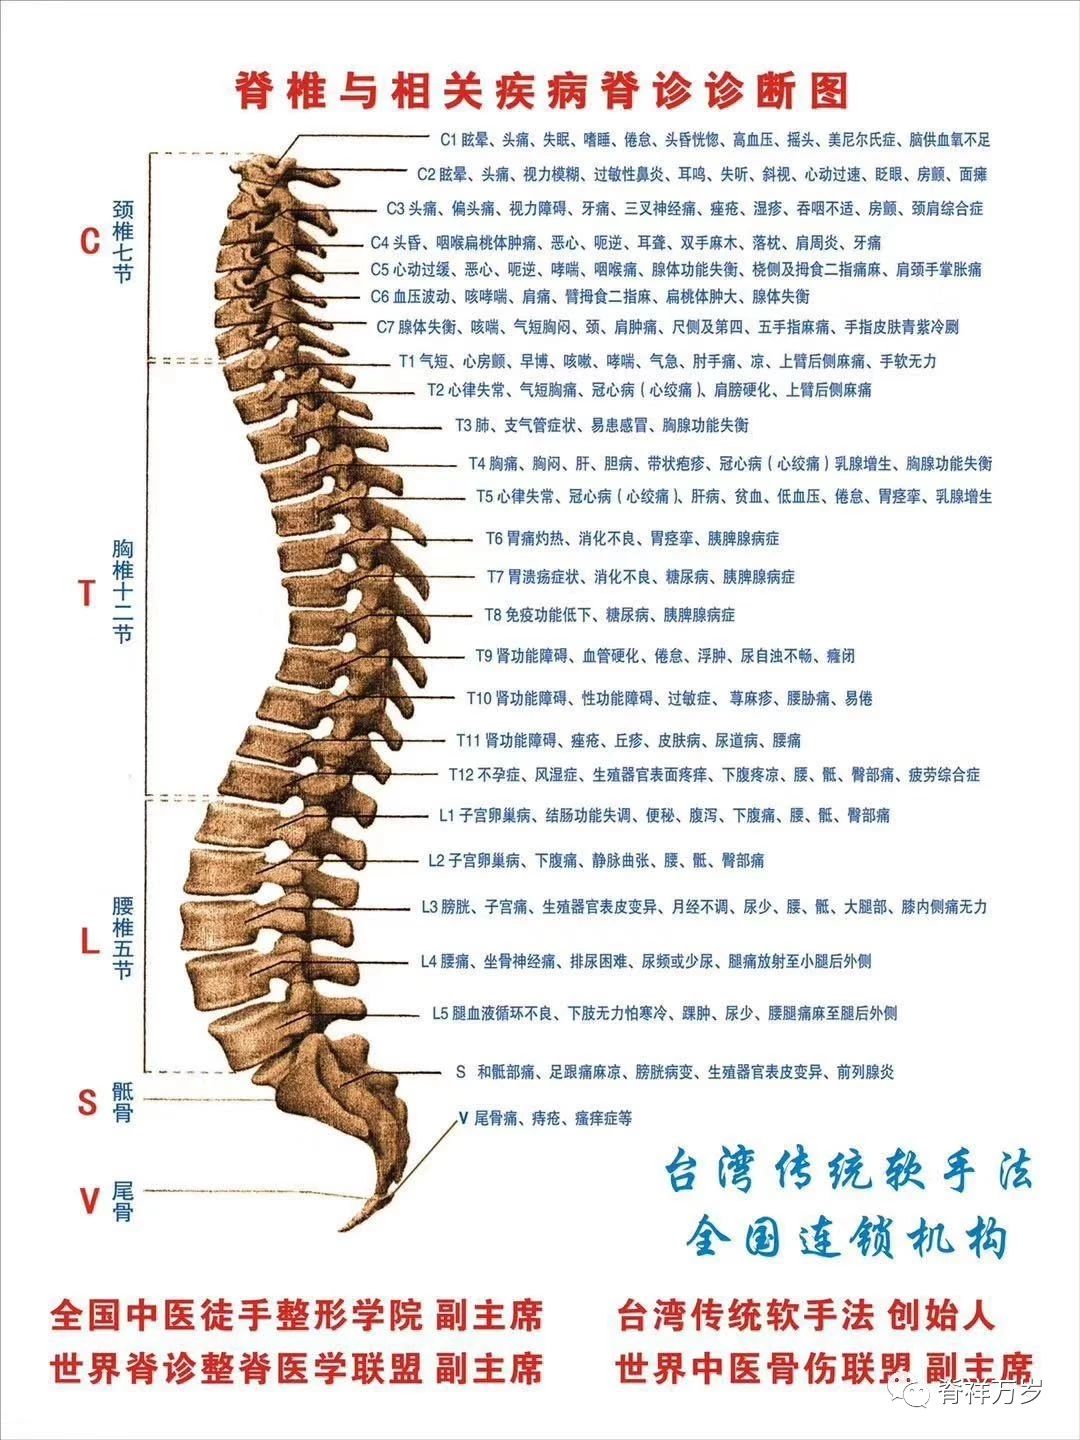 脊柱节段与人体部位的对应图大全，你想要的都在这里 - 知乎